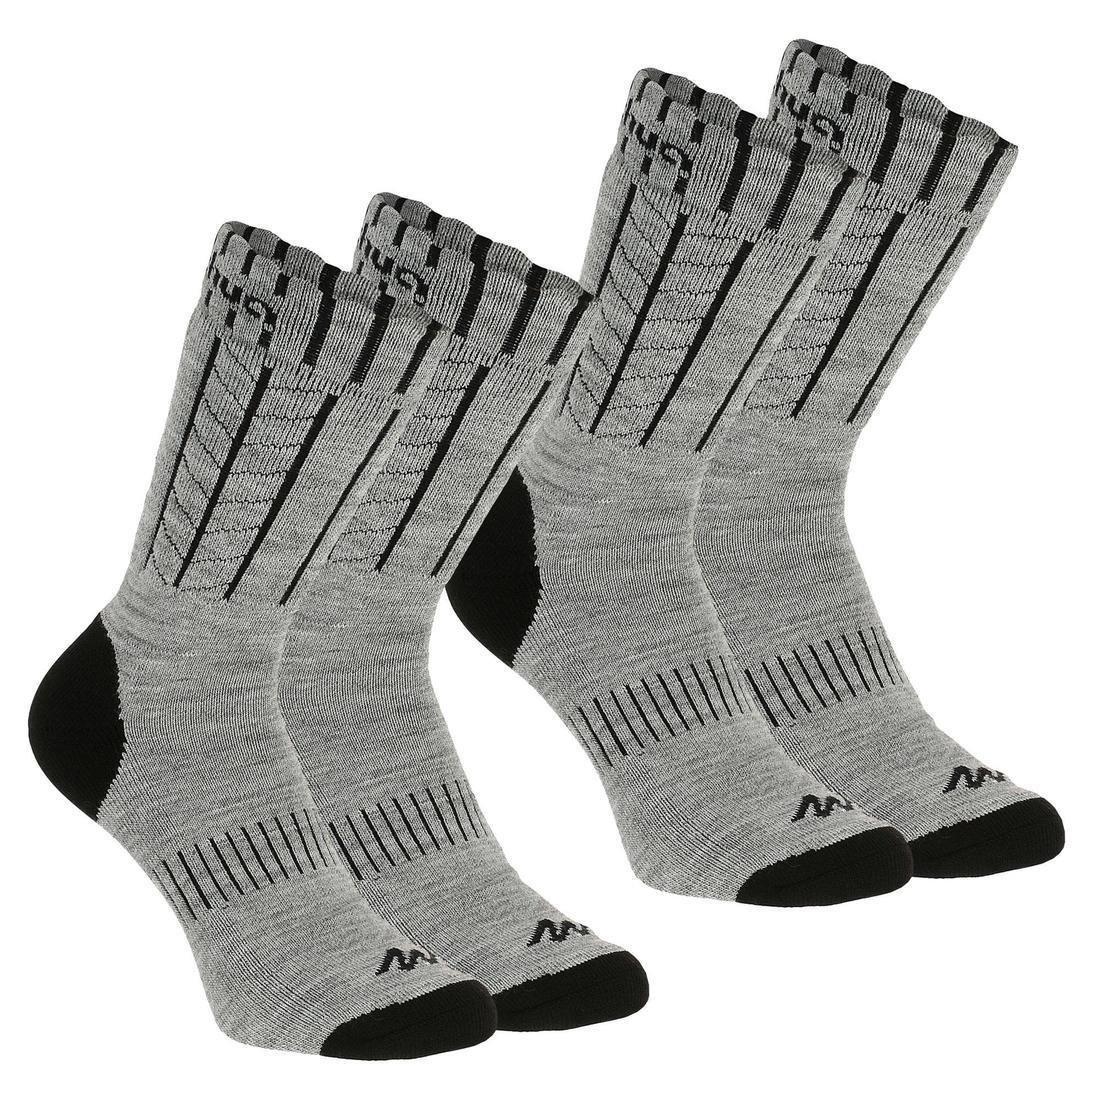 QUECHUA - EU 35-38  Adult Warm Hiking Socks - SH100 X-WARM MID - 2 Pairs, Pewter